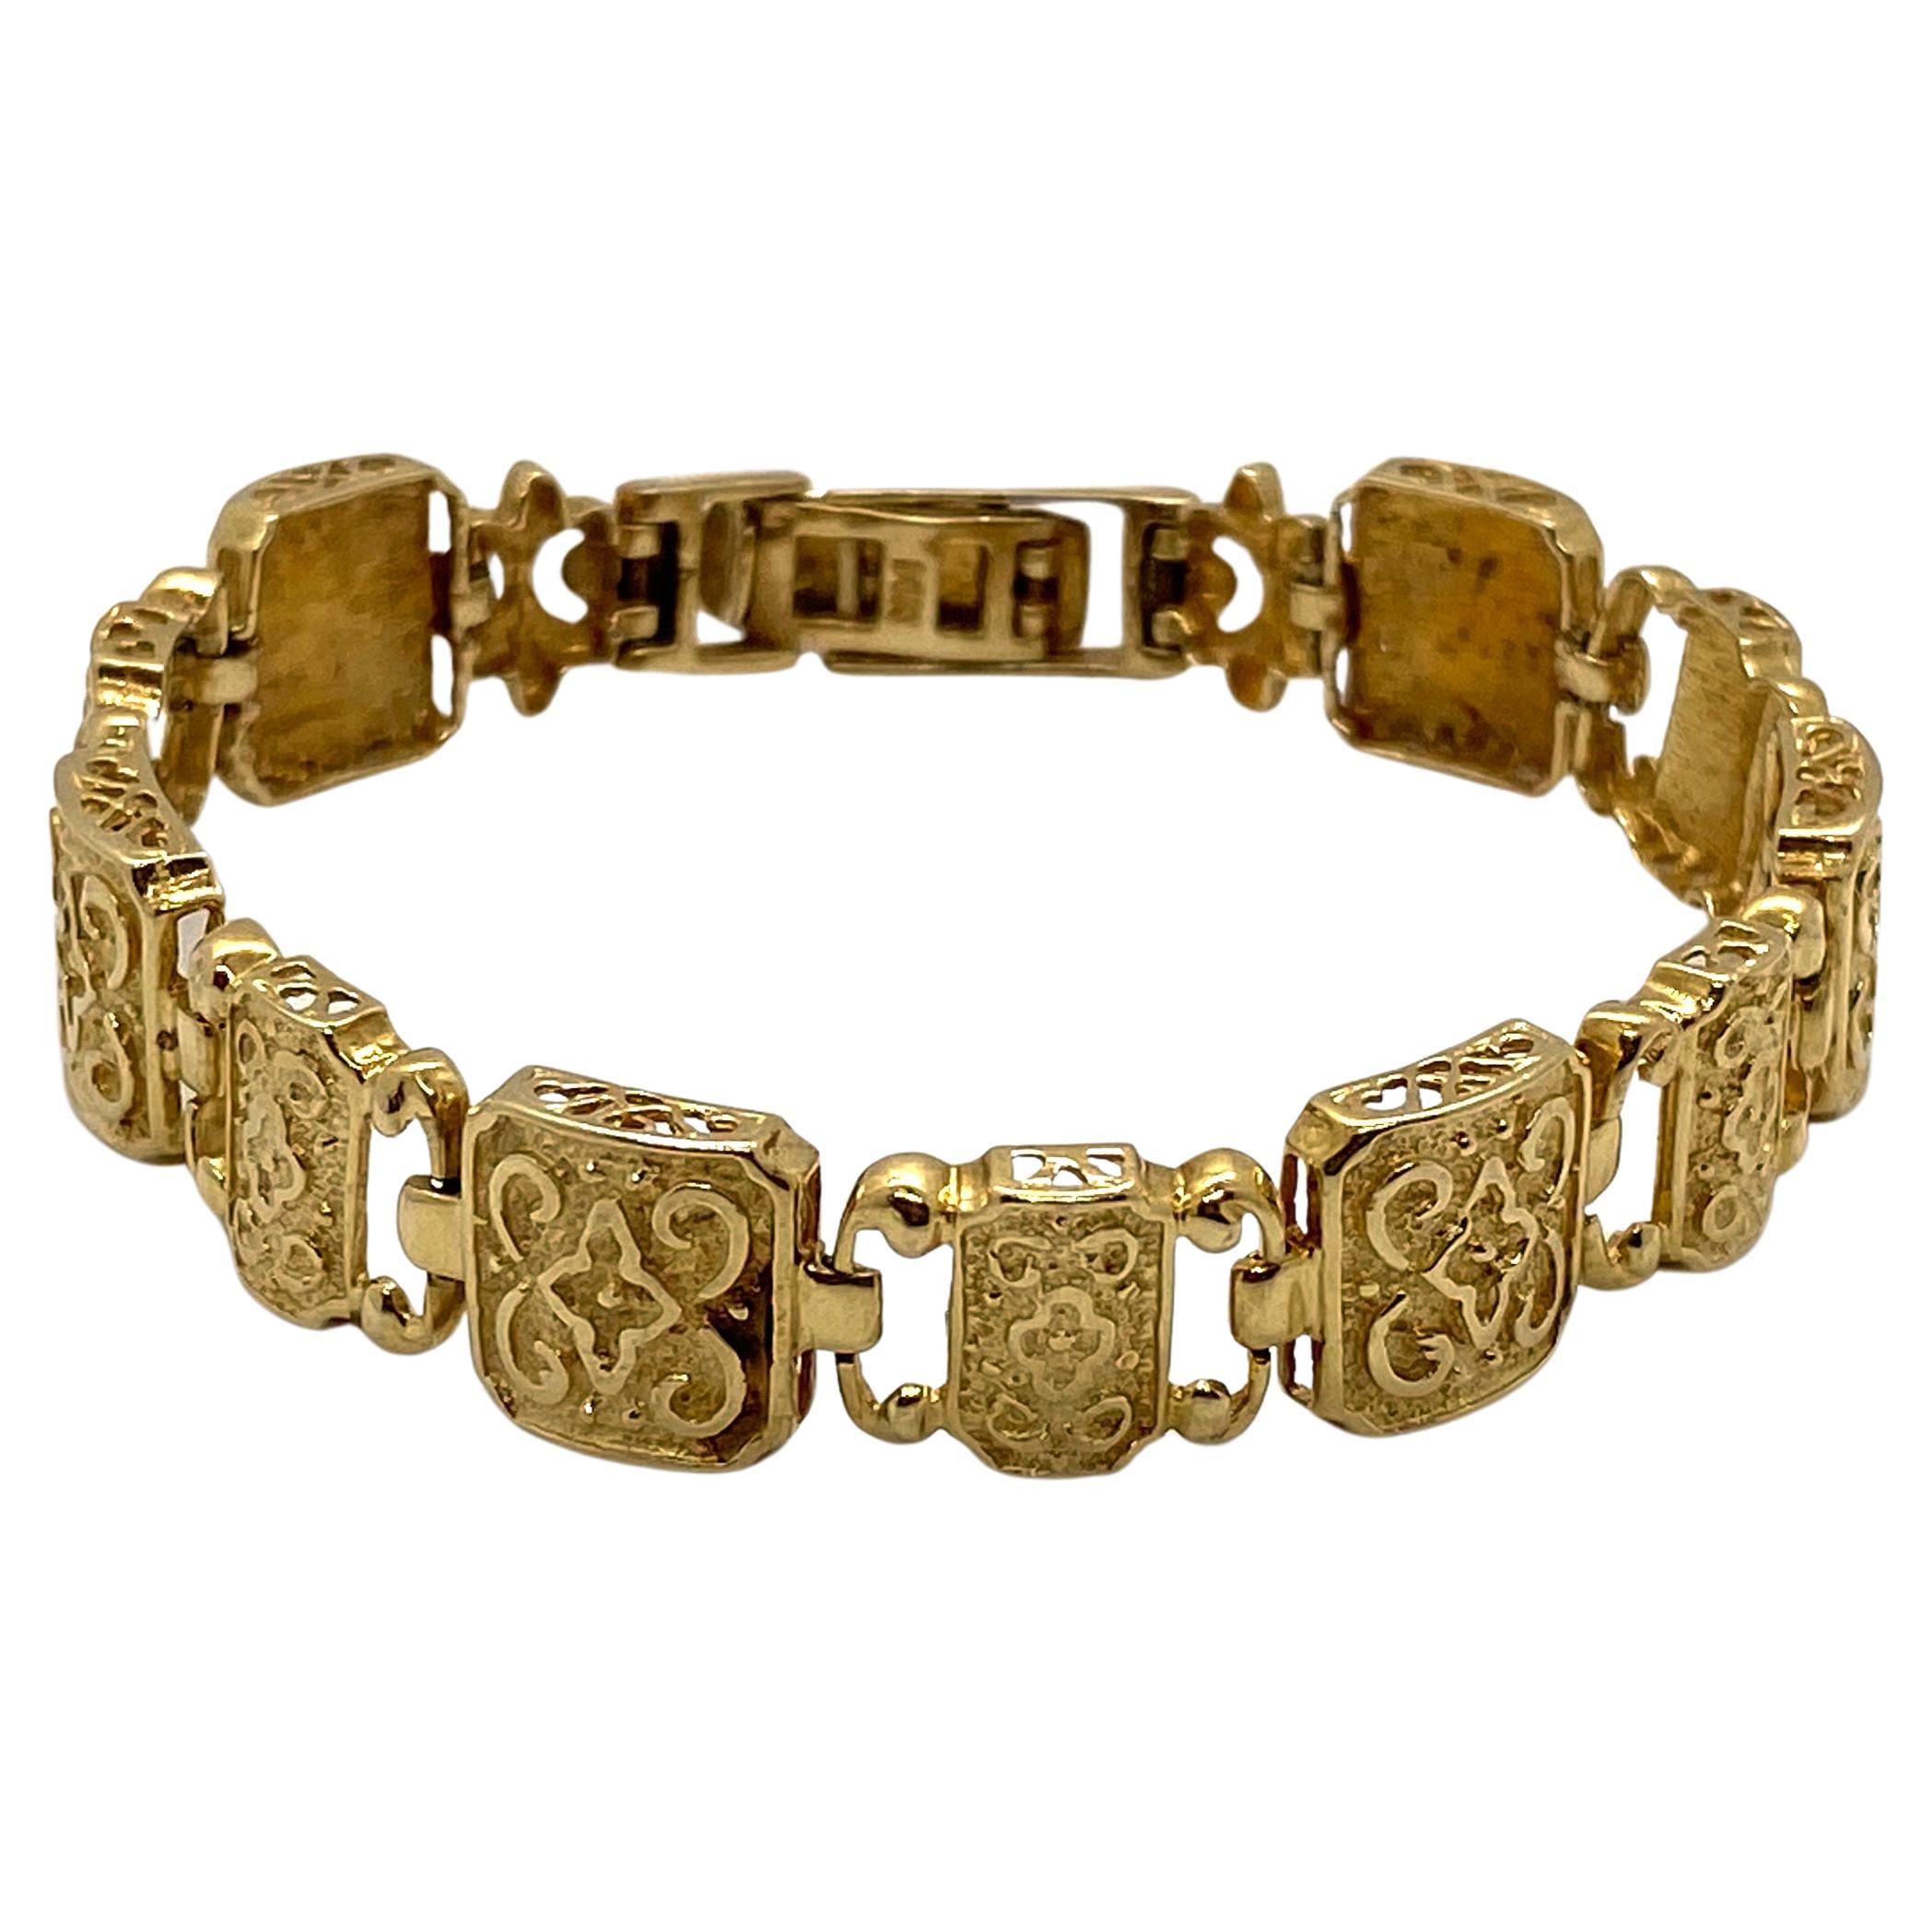 Gebrauchtes Quadratisches Gliederarmband aus 14K Gelbgold im byzantinischen Stil